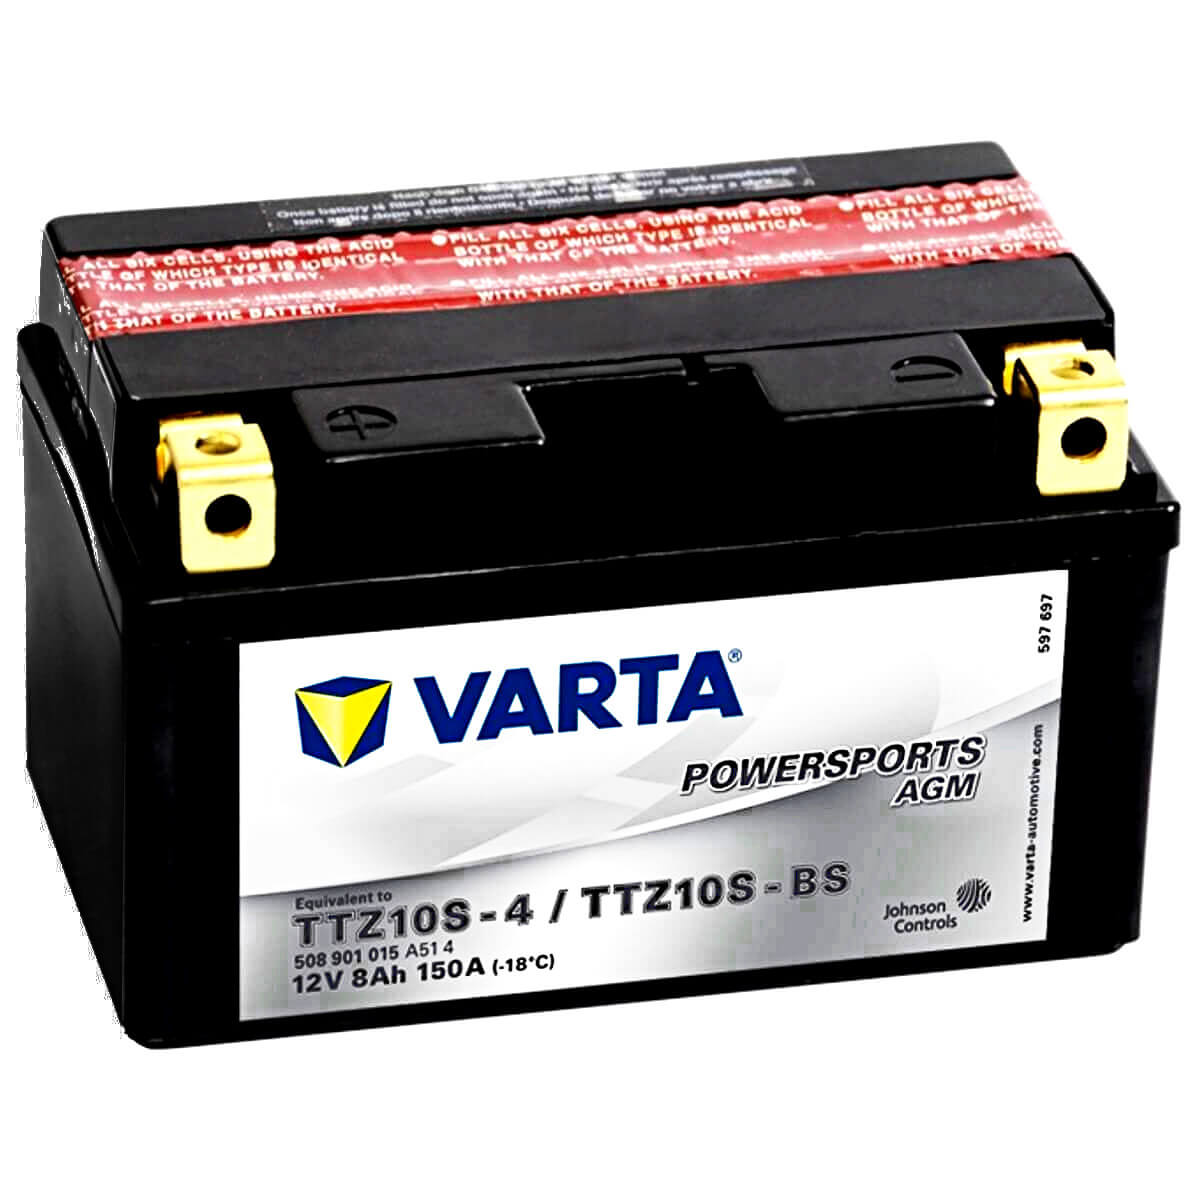 Varta Powersports 508901 AGM 12V 8Ah 150A